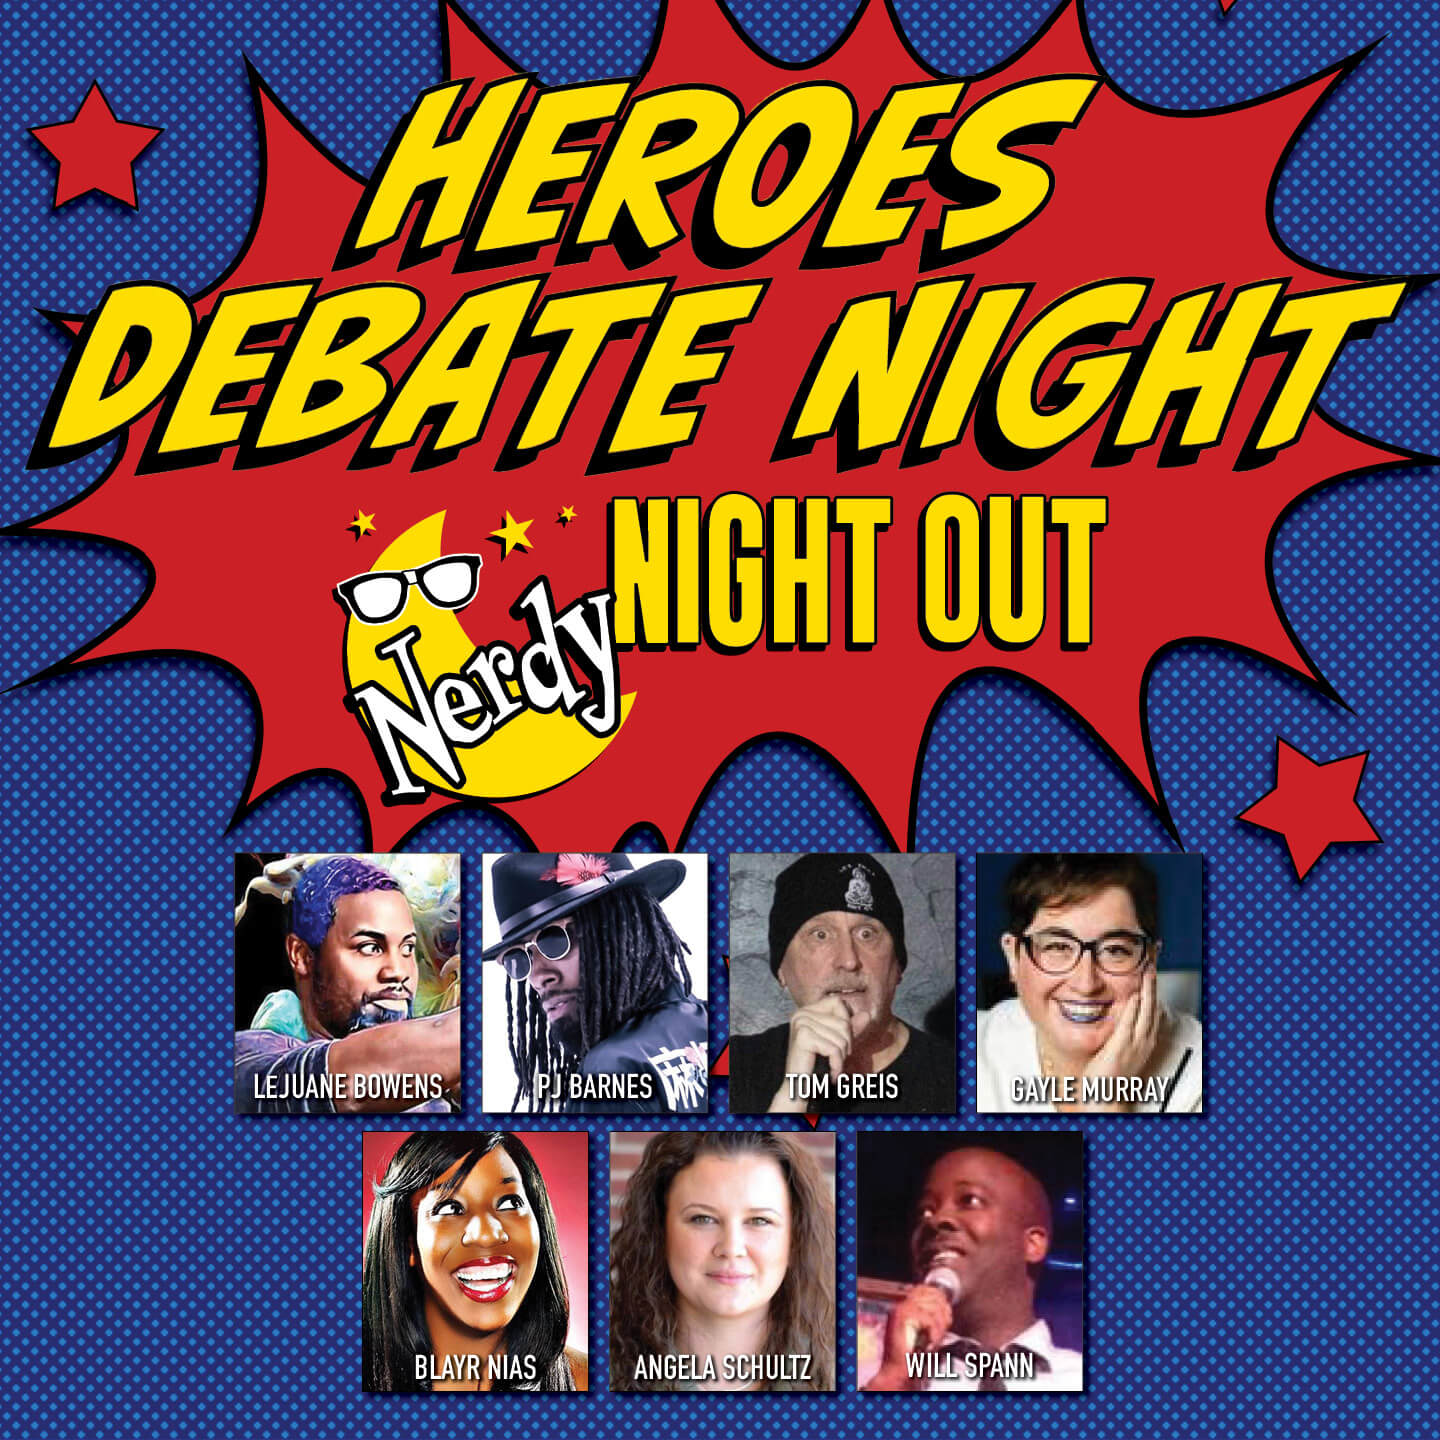 Nerdy Night Out: Heroes Debate Night